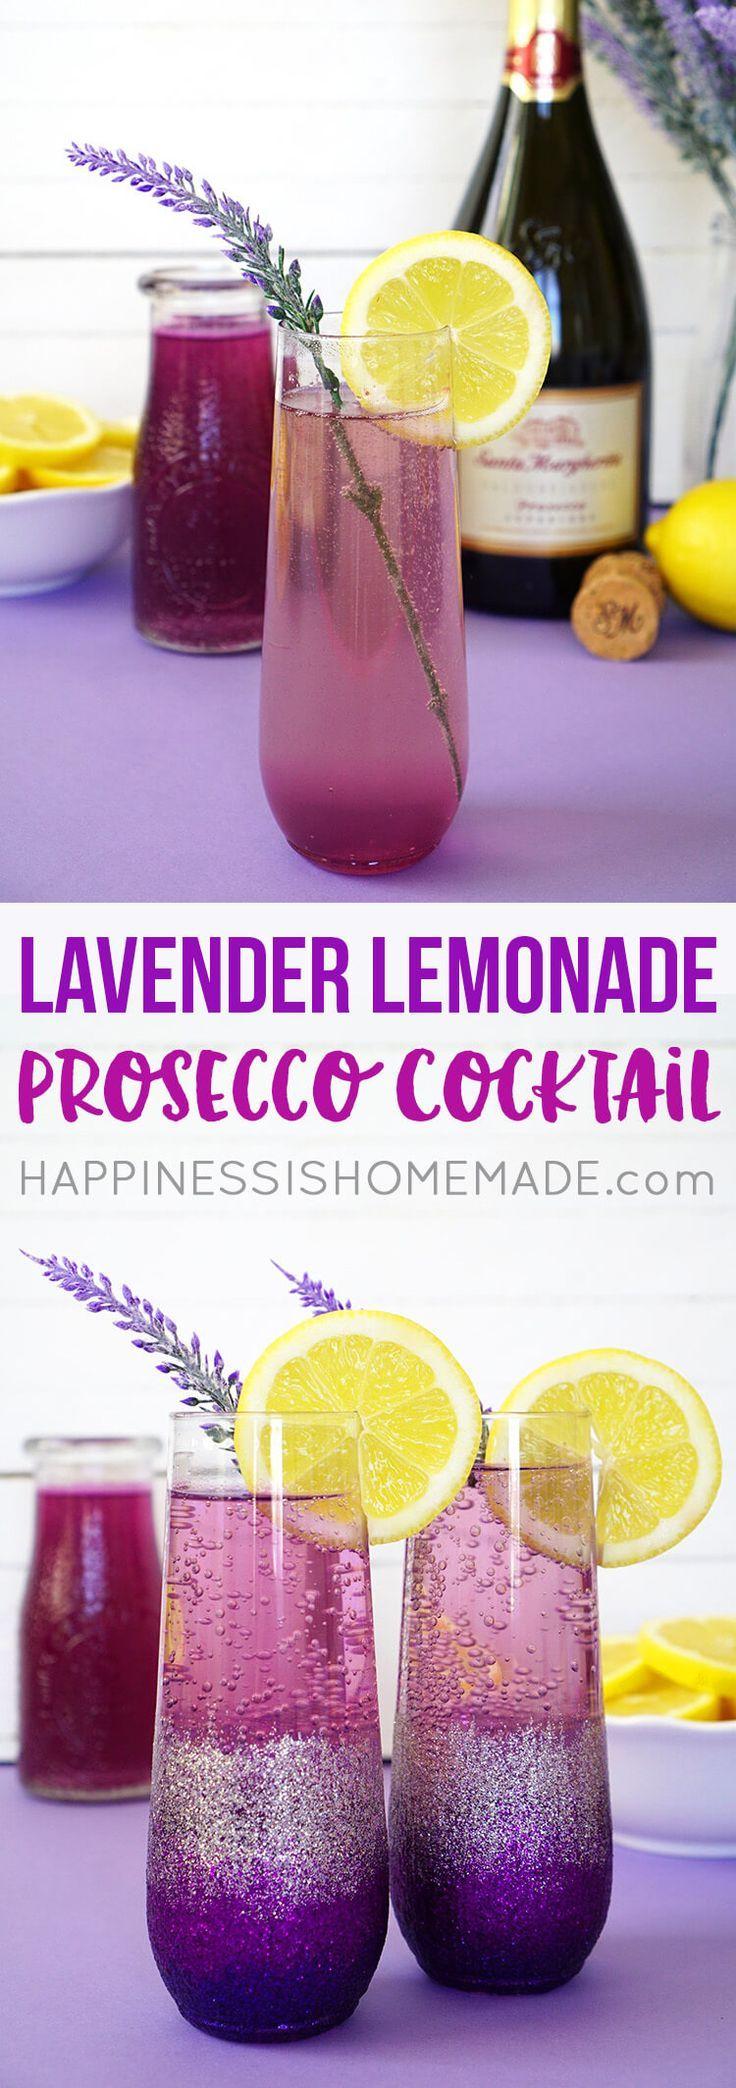 Hochzeit - Lavender Lemonade Prosecco Cocktail